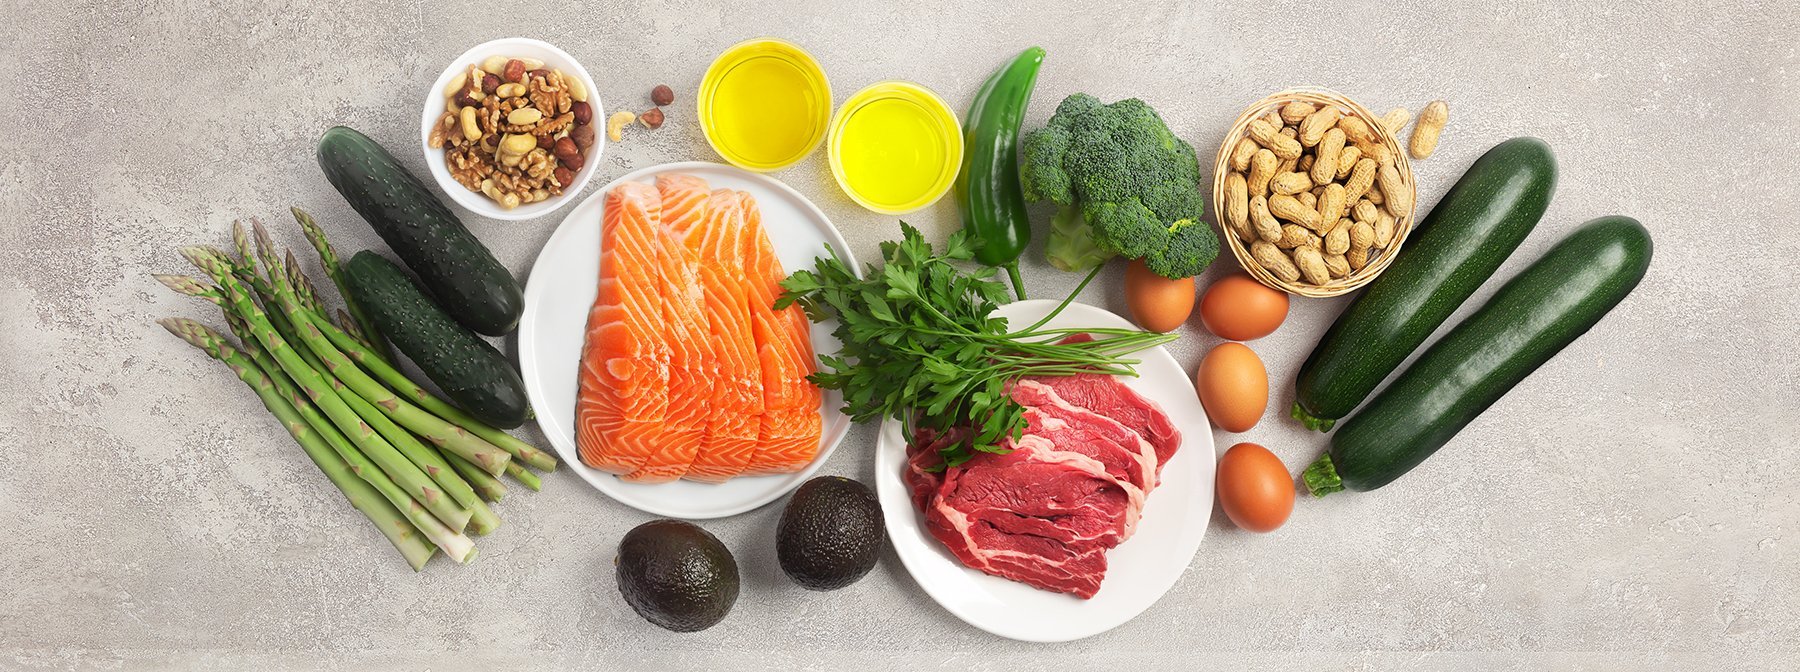 Alimentos ricos en aminoácidos: mejores opciones para tu dieta